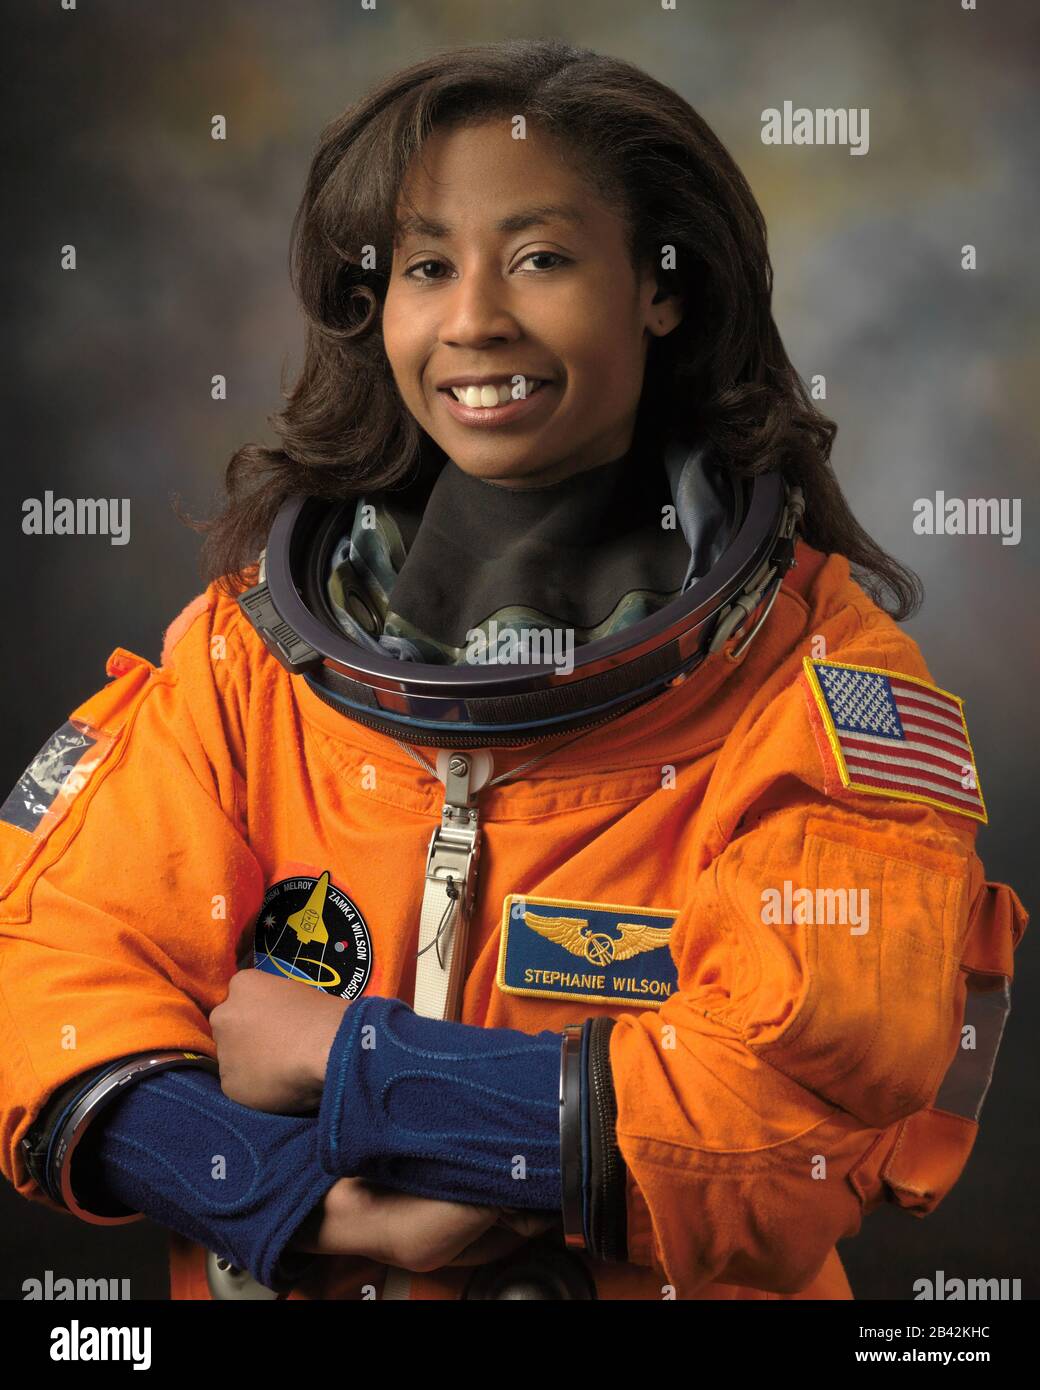 USA - 16. Februar 2017 - Formales Porträt der NASA-Astronautin Stephanie Wilson in ihrem Spacesuit (Einführungsanzug oder Druckanzug) Stockfoto